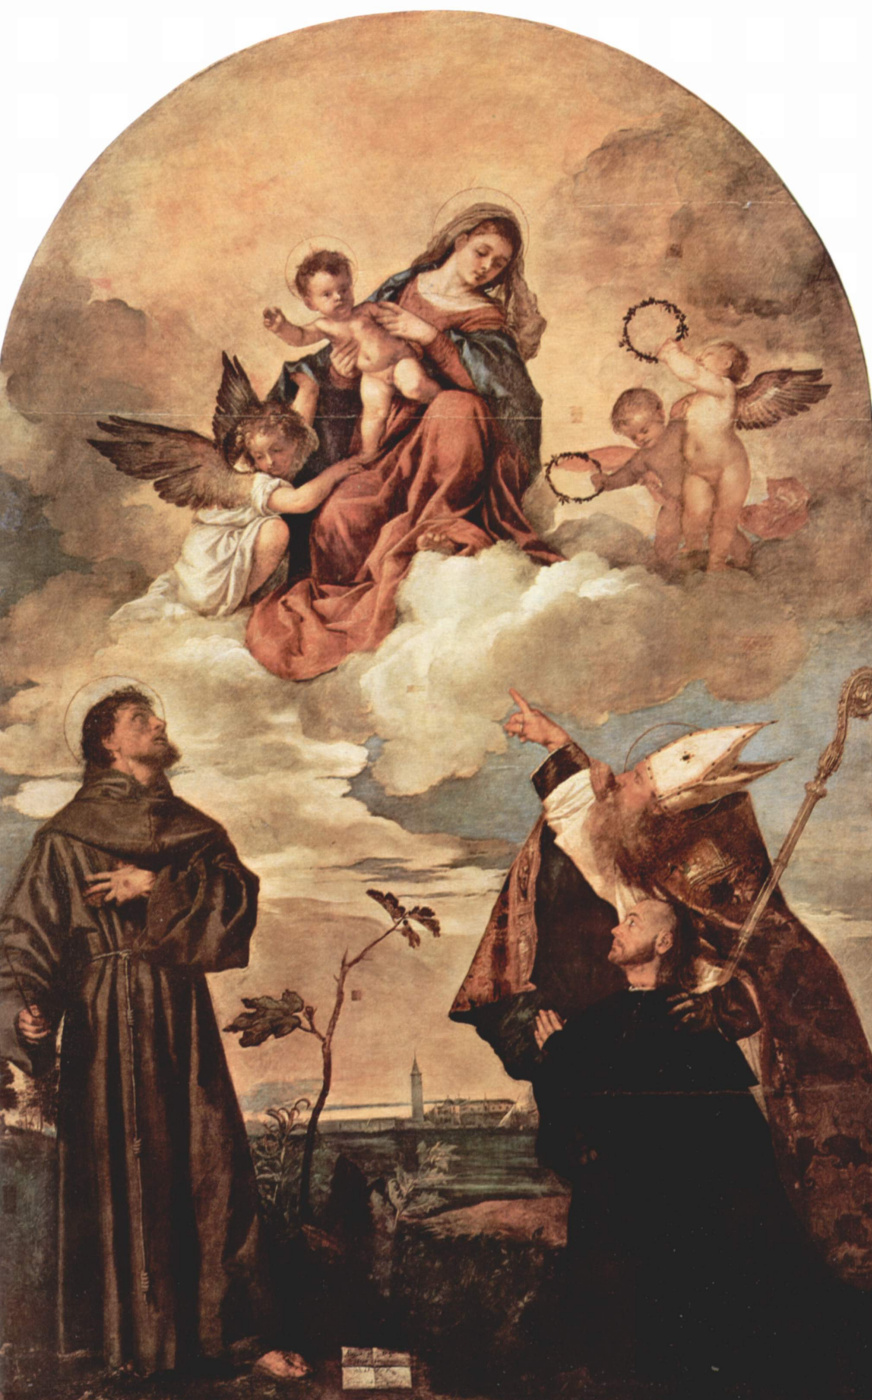 Мадонна Гоцци. Мария во славе с младенцем Иисусом и ангелами, св. Франциском, Альвизием и коленопреклоненным донатором Луиджи Гоцци